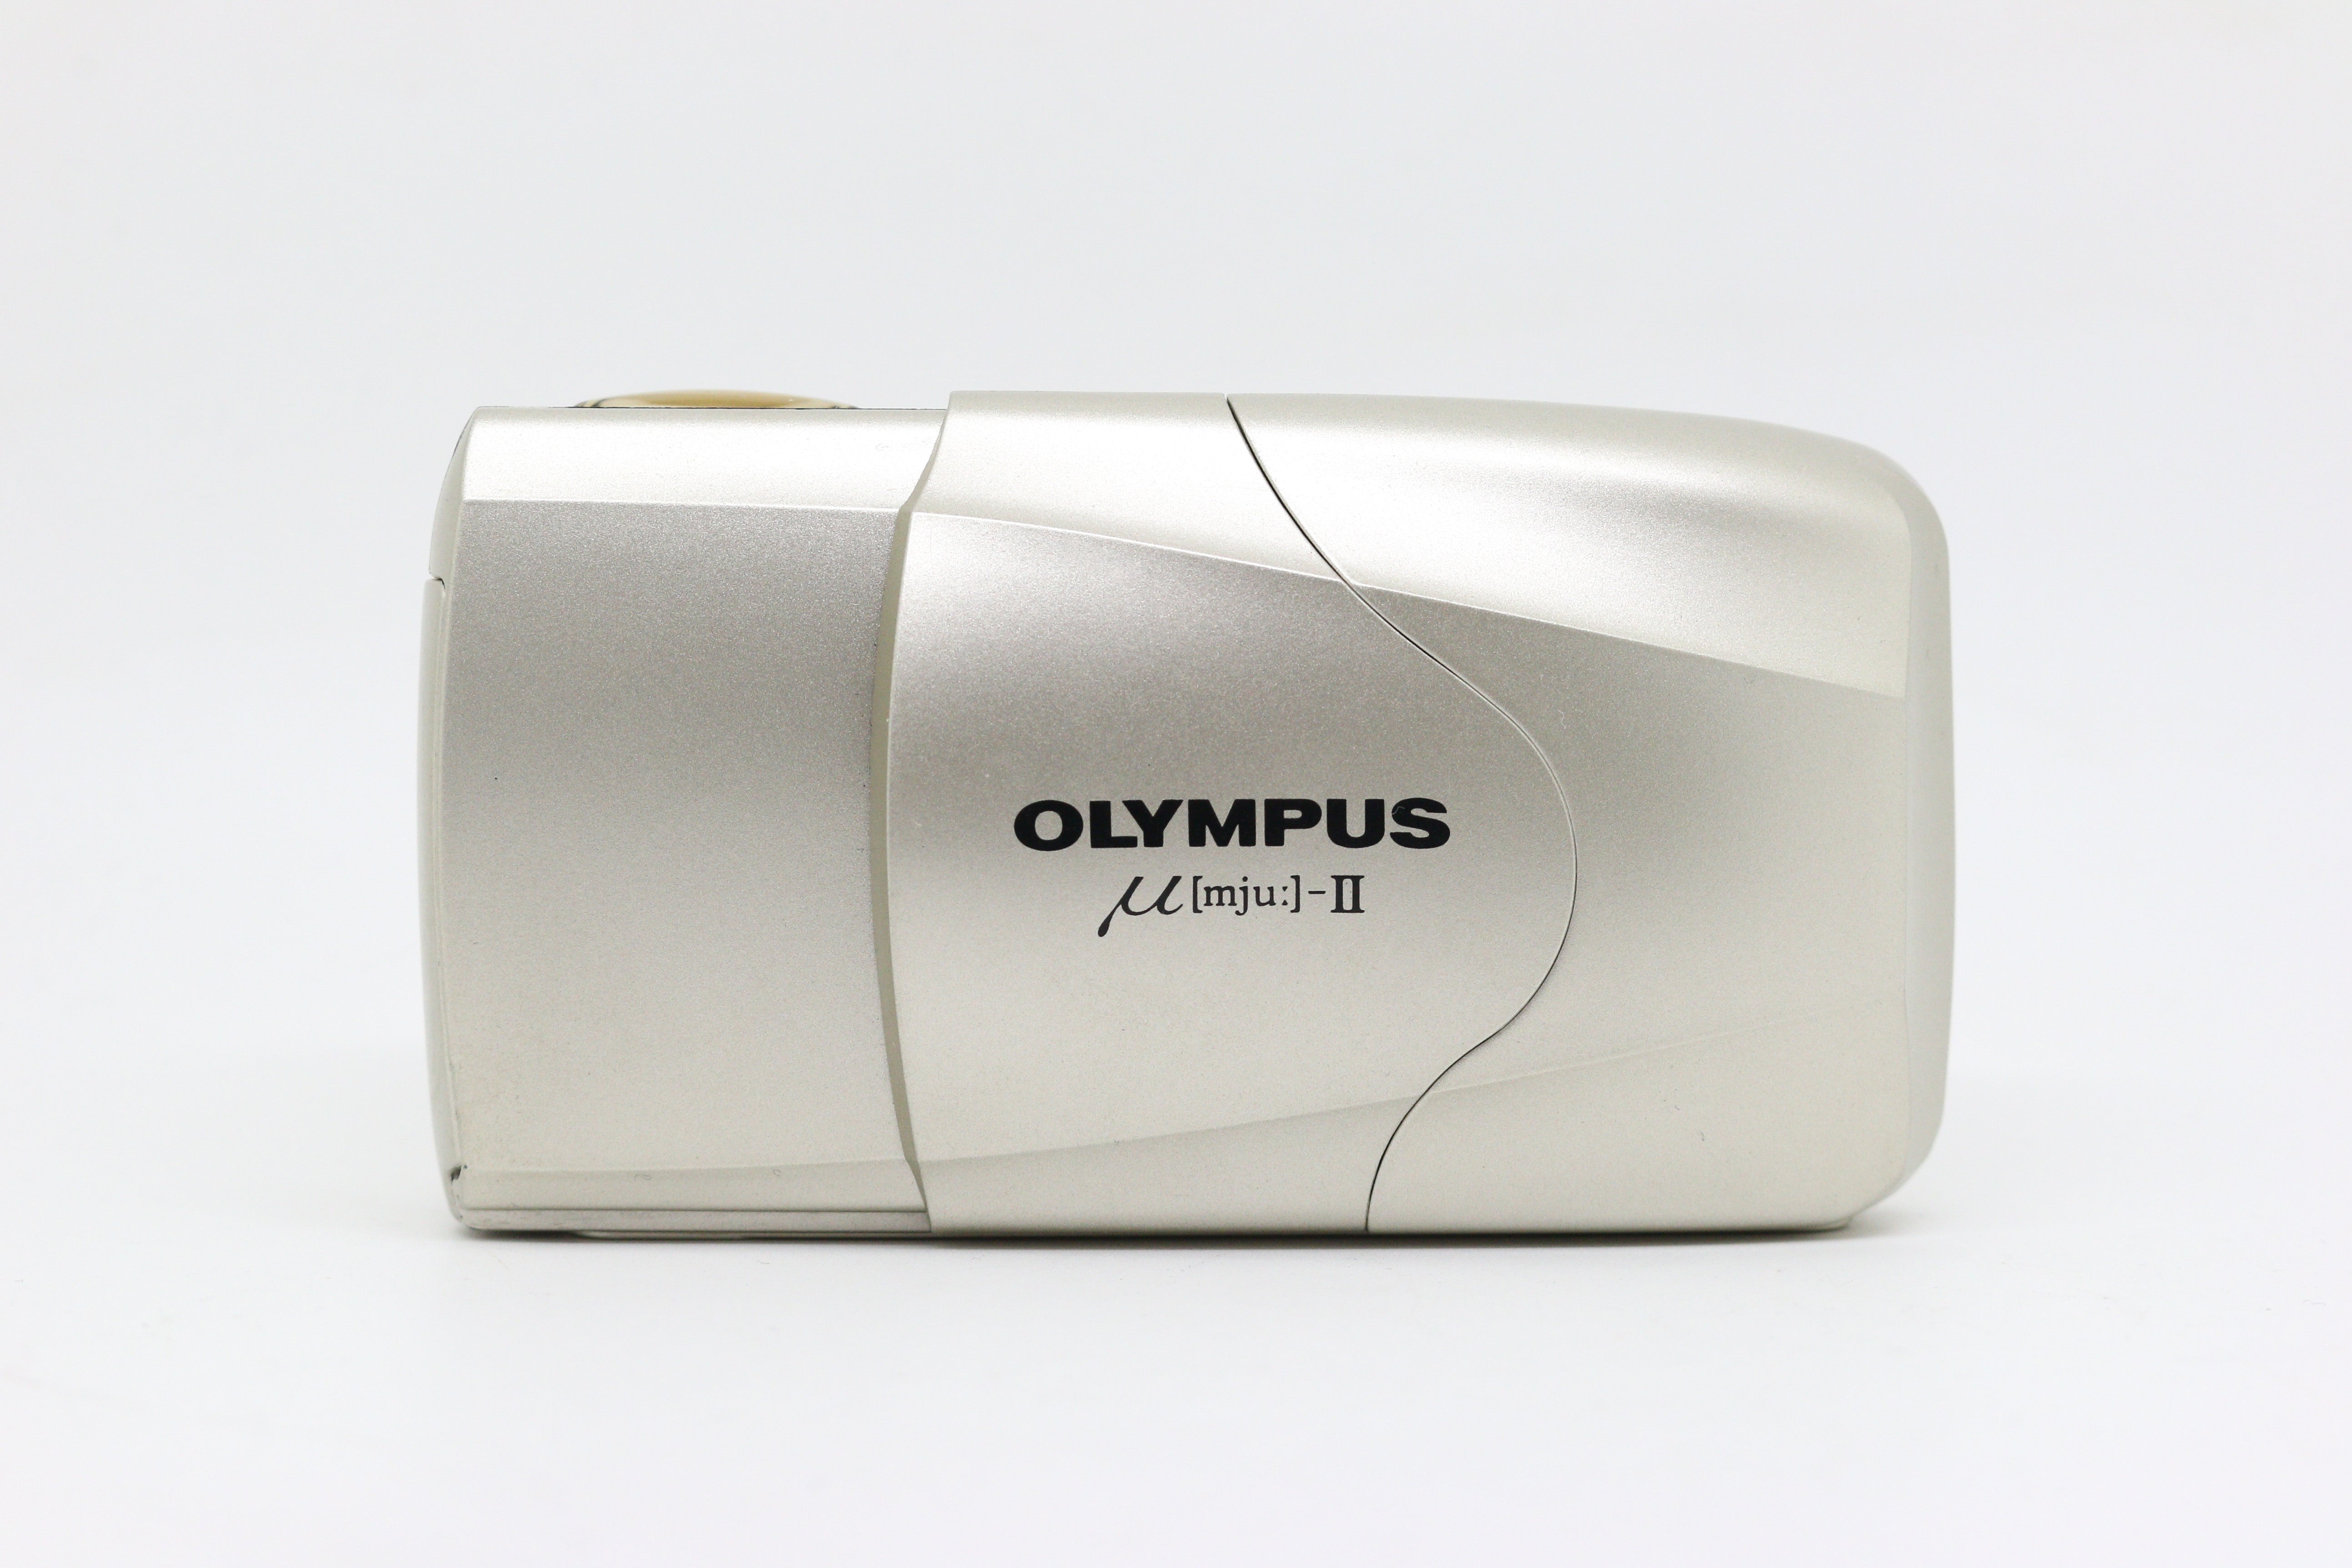 Olympus µ[mju:]-II (Quartz Date)